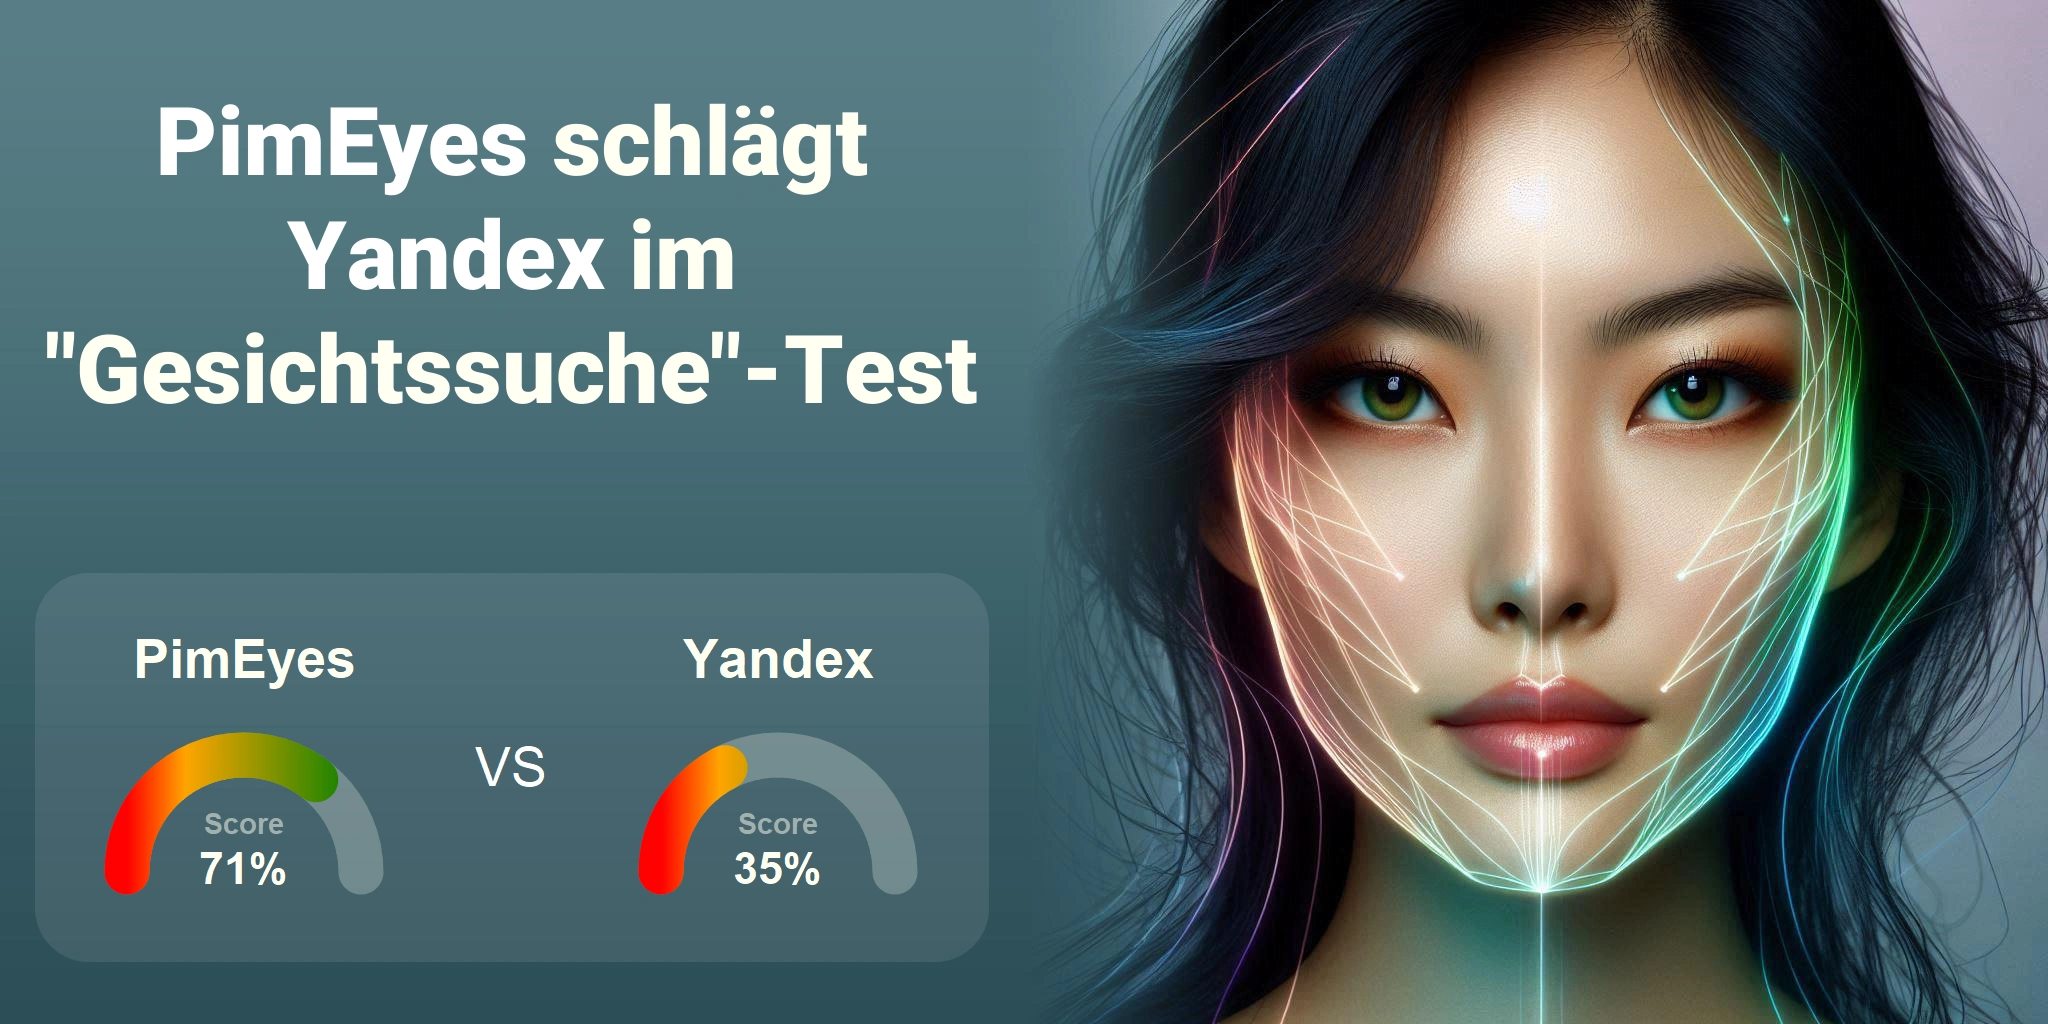 Welcher ist besser für die Gesichtssuche: <br>PimEyes oder Yandex?